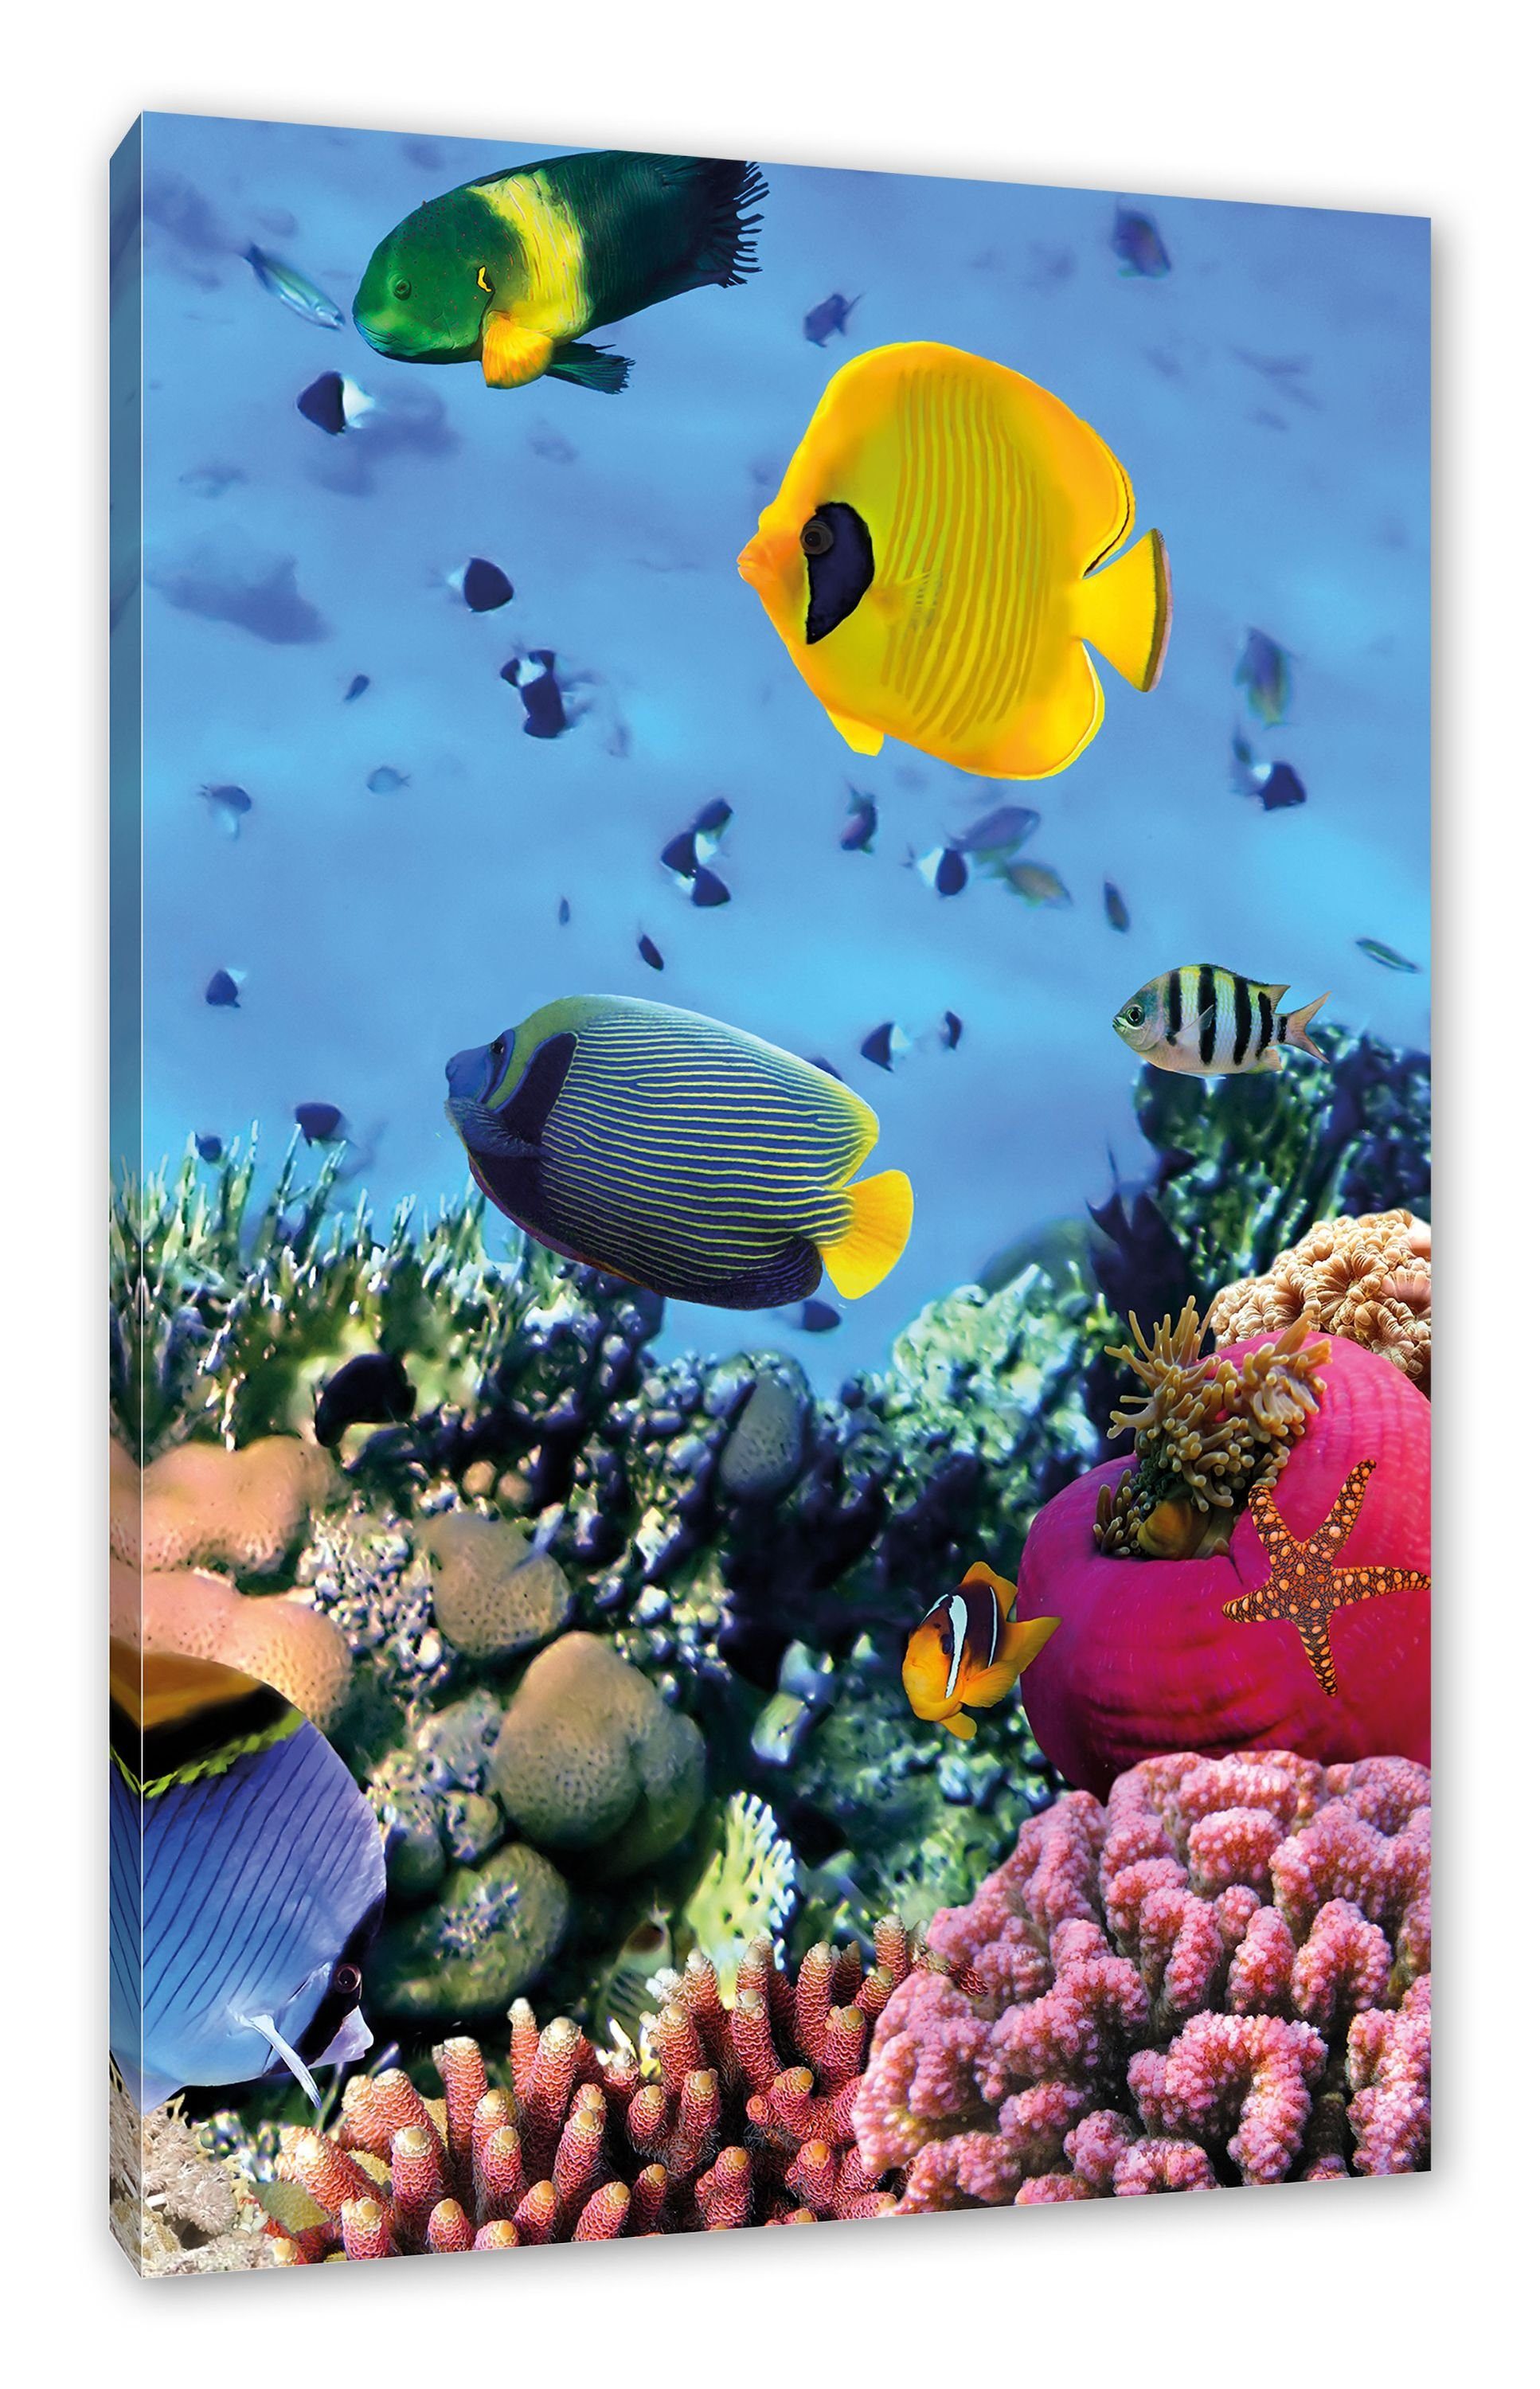 Pixxprint Leinwandbild Fische im fertig bespannt, Korallenriff, Fische inkl. im Leinwandbild Zackenaufhänger (1 Korallenriff St)